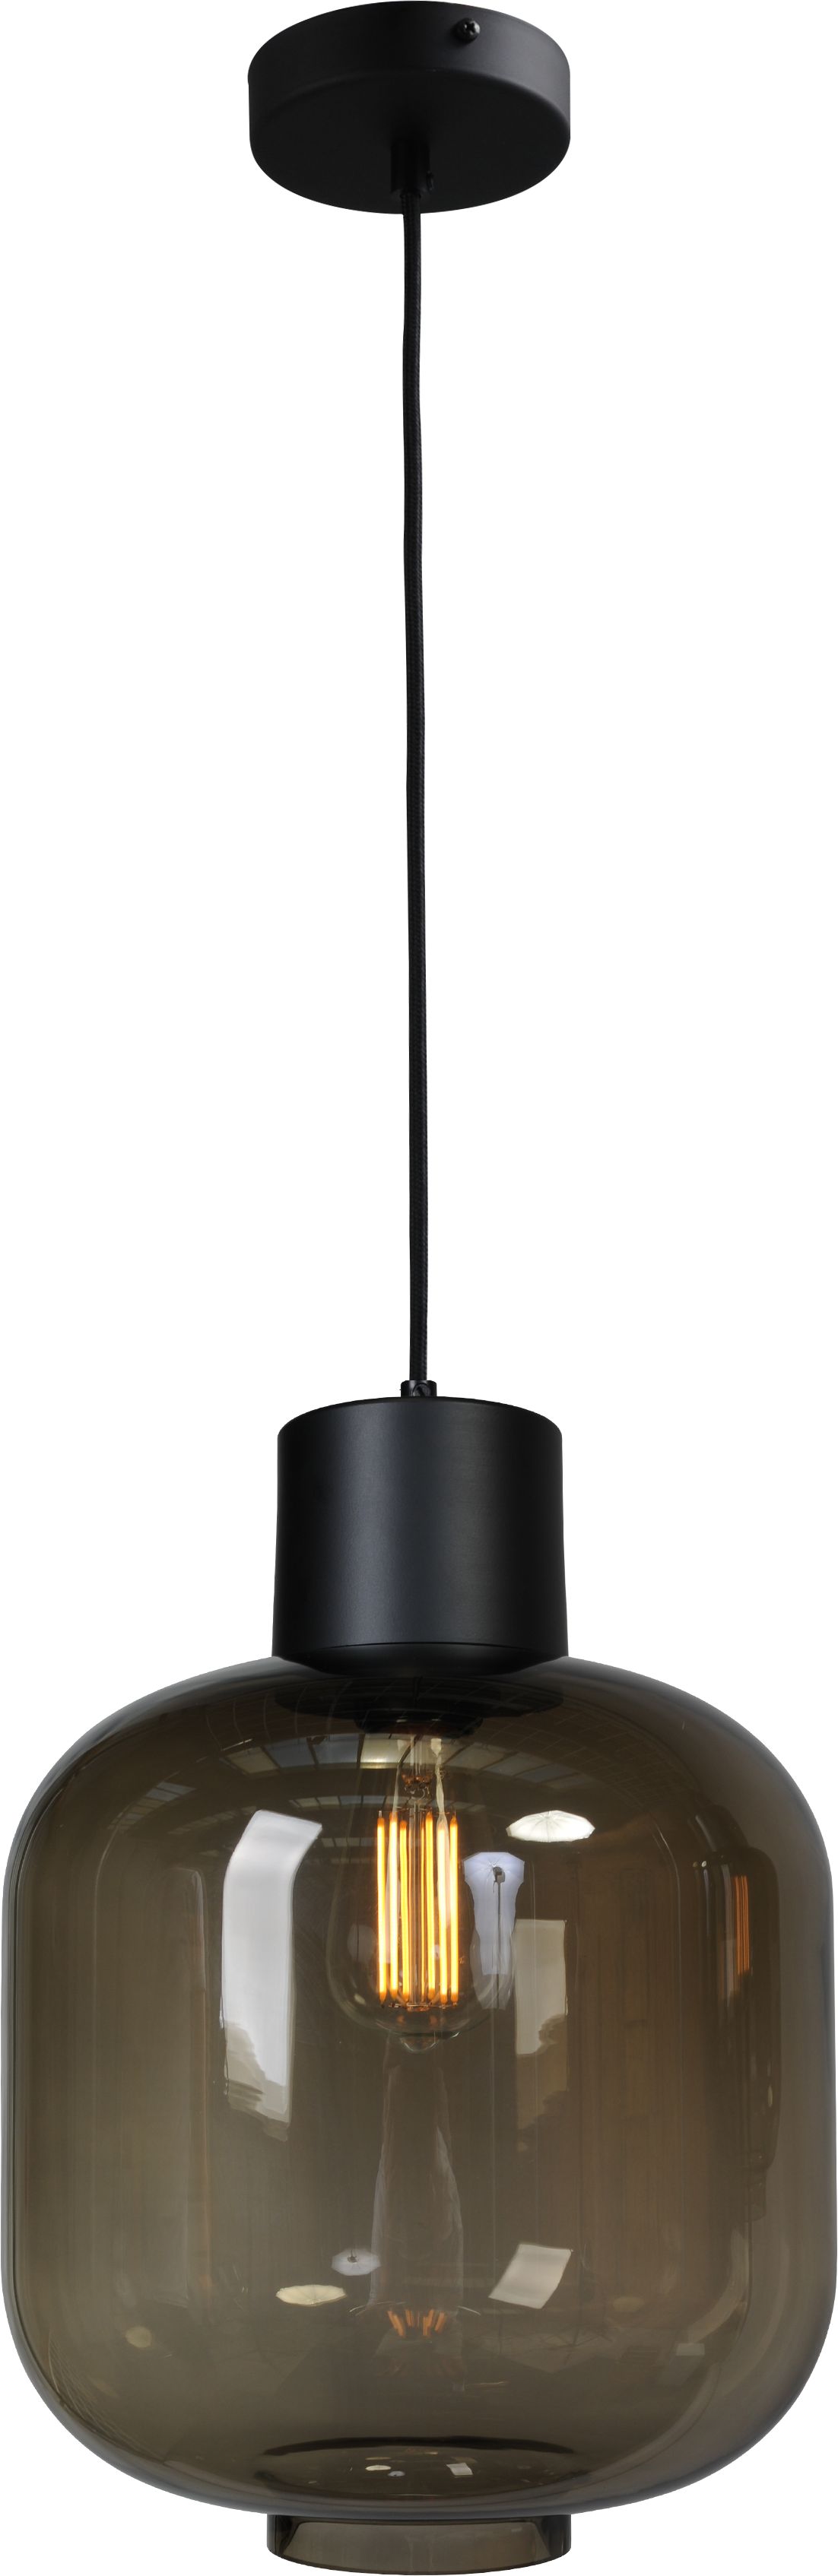 Stehlampe Schwarz 165 cm E27 Leuchte Rauchglas Metall